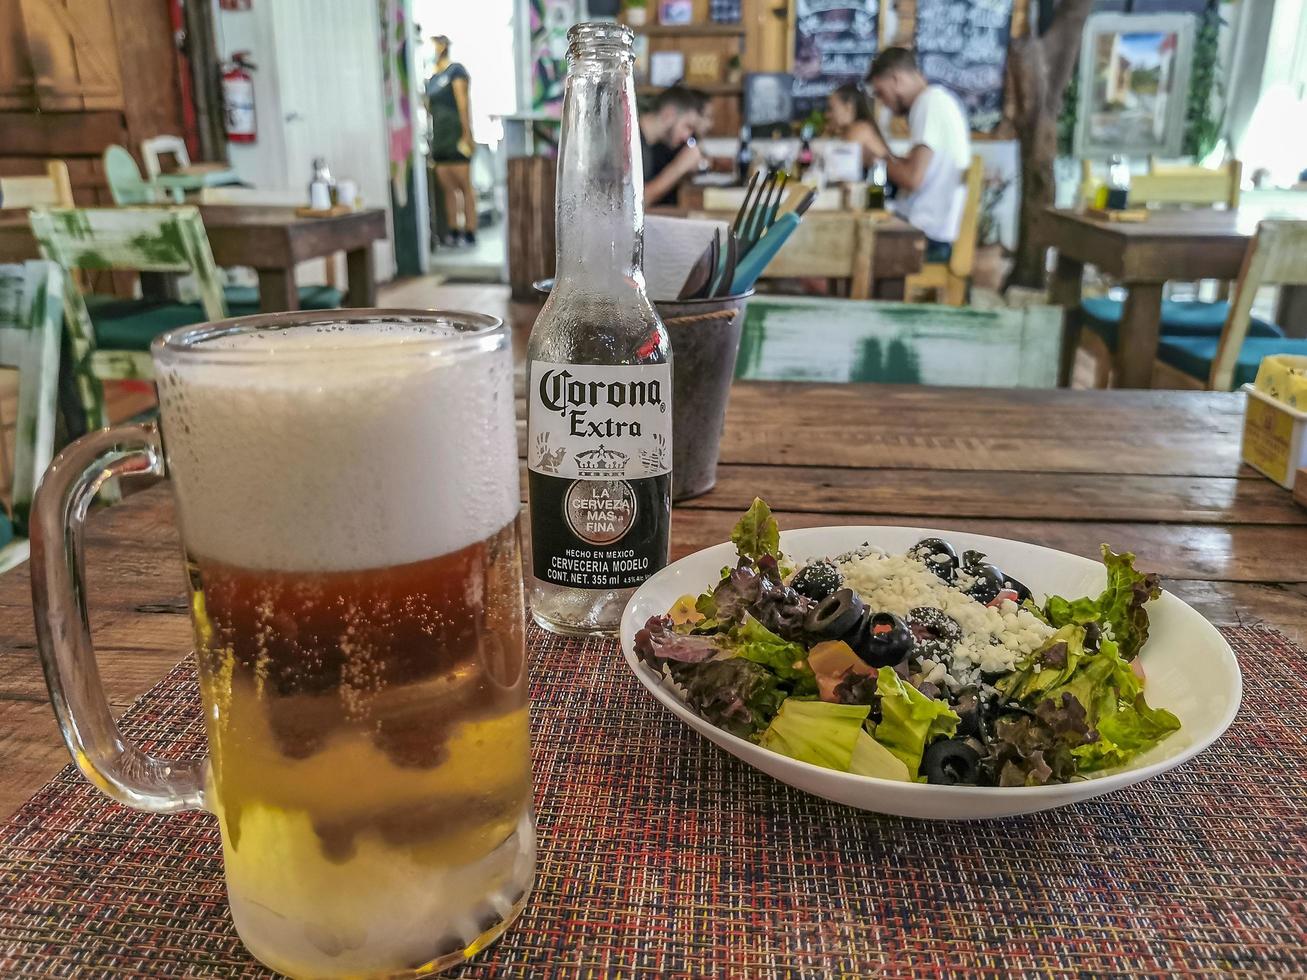 playa del carmen quintana roo mexico 2022 comida y bebida en restaurante papacharly playa del carmen mexico. foto